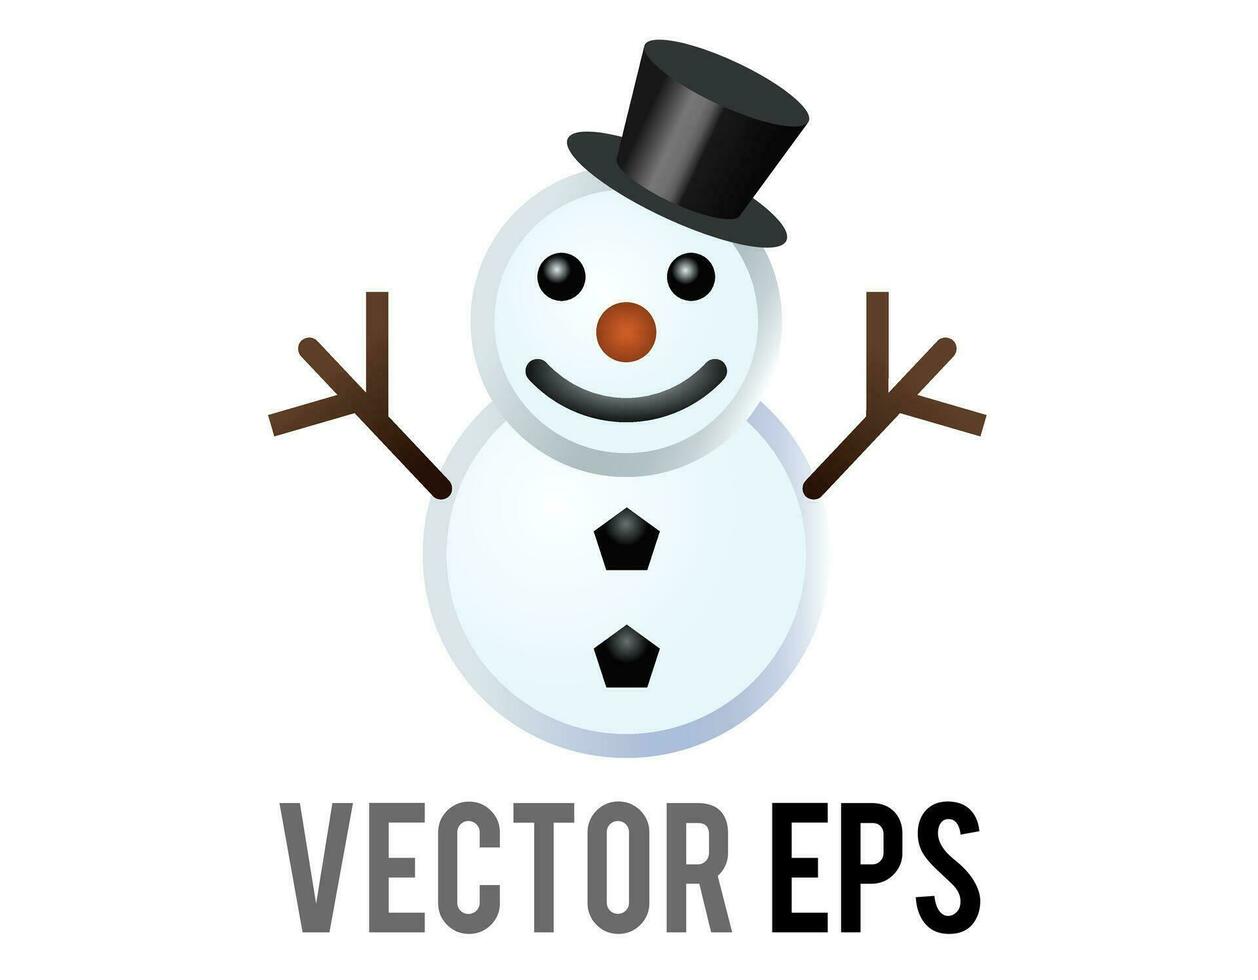 vetor clássico boneco de neve fez a partir de dois ampla bolas de neve ícone, braços, topo chapéu, cenoura nariz, carvão olhos